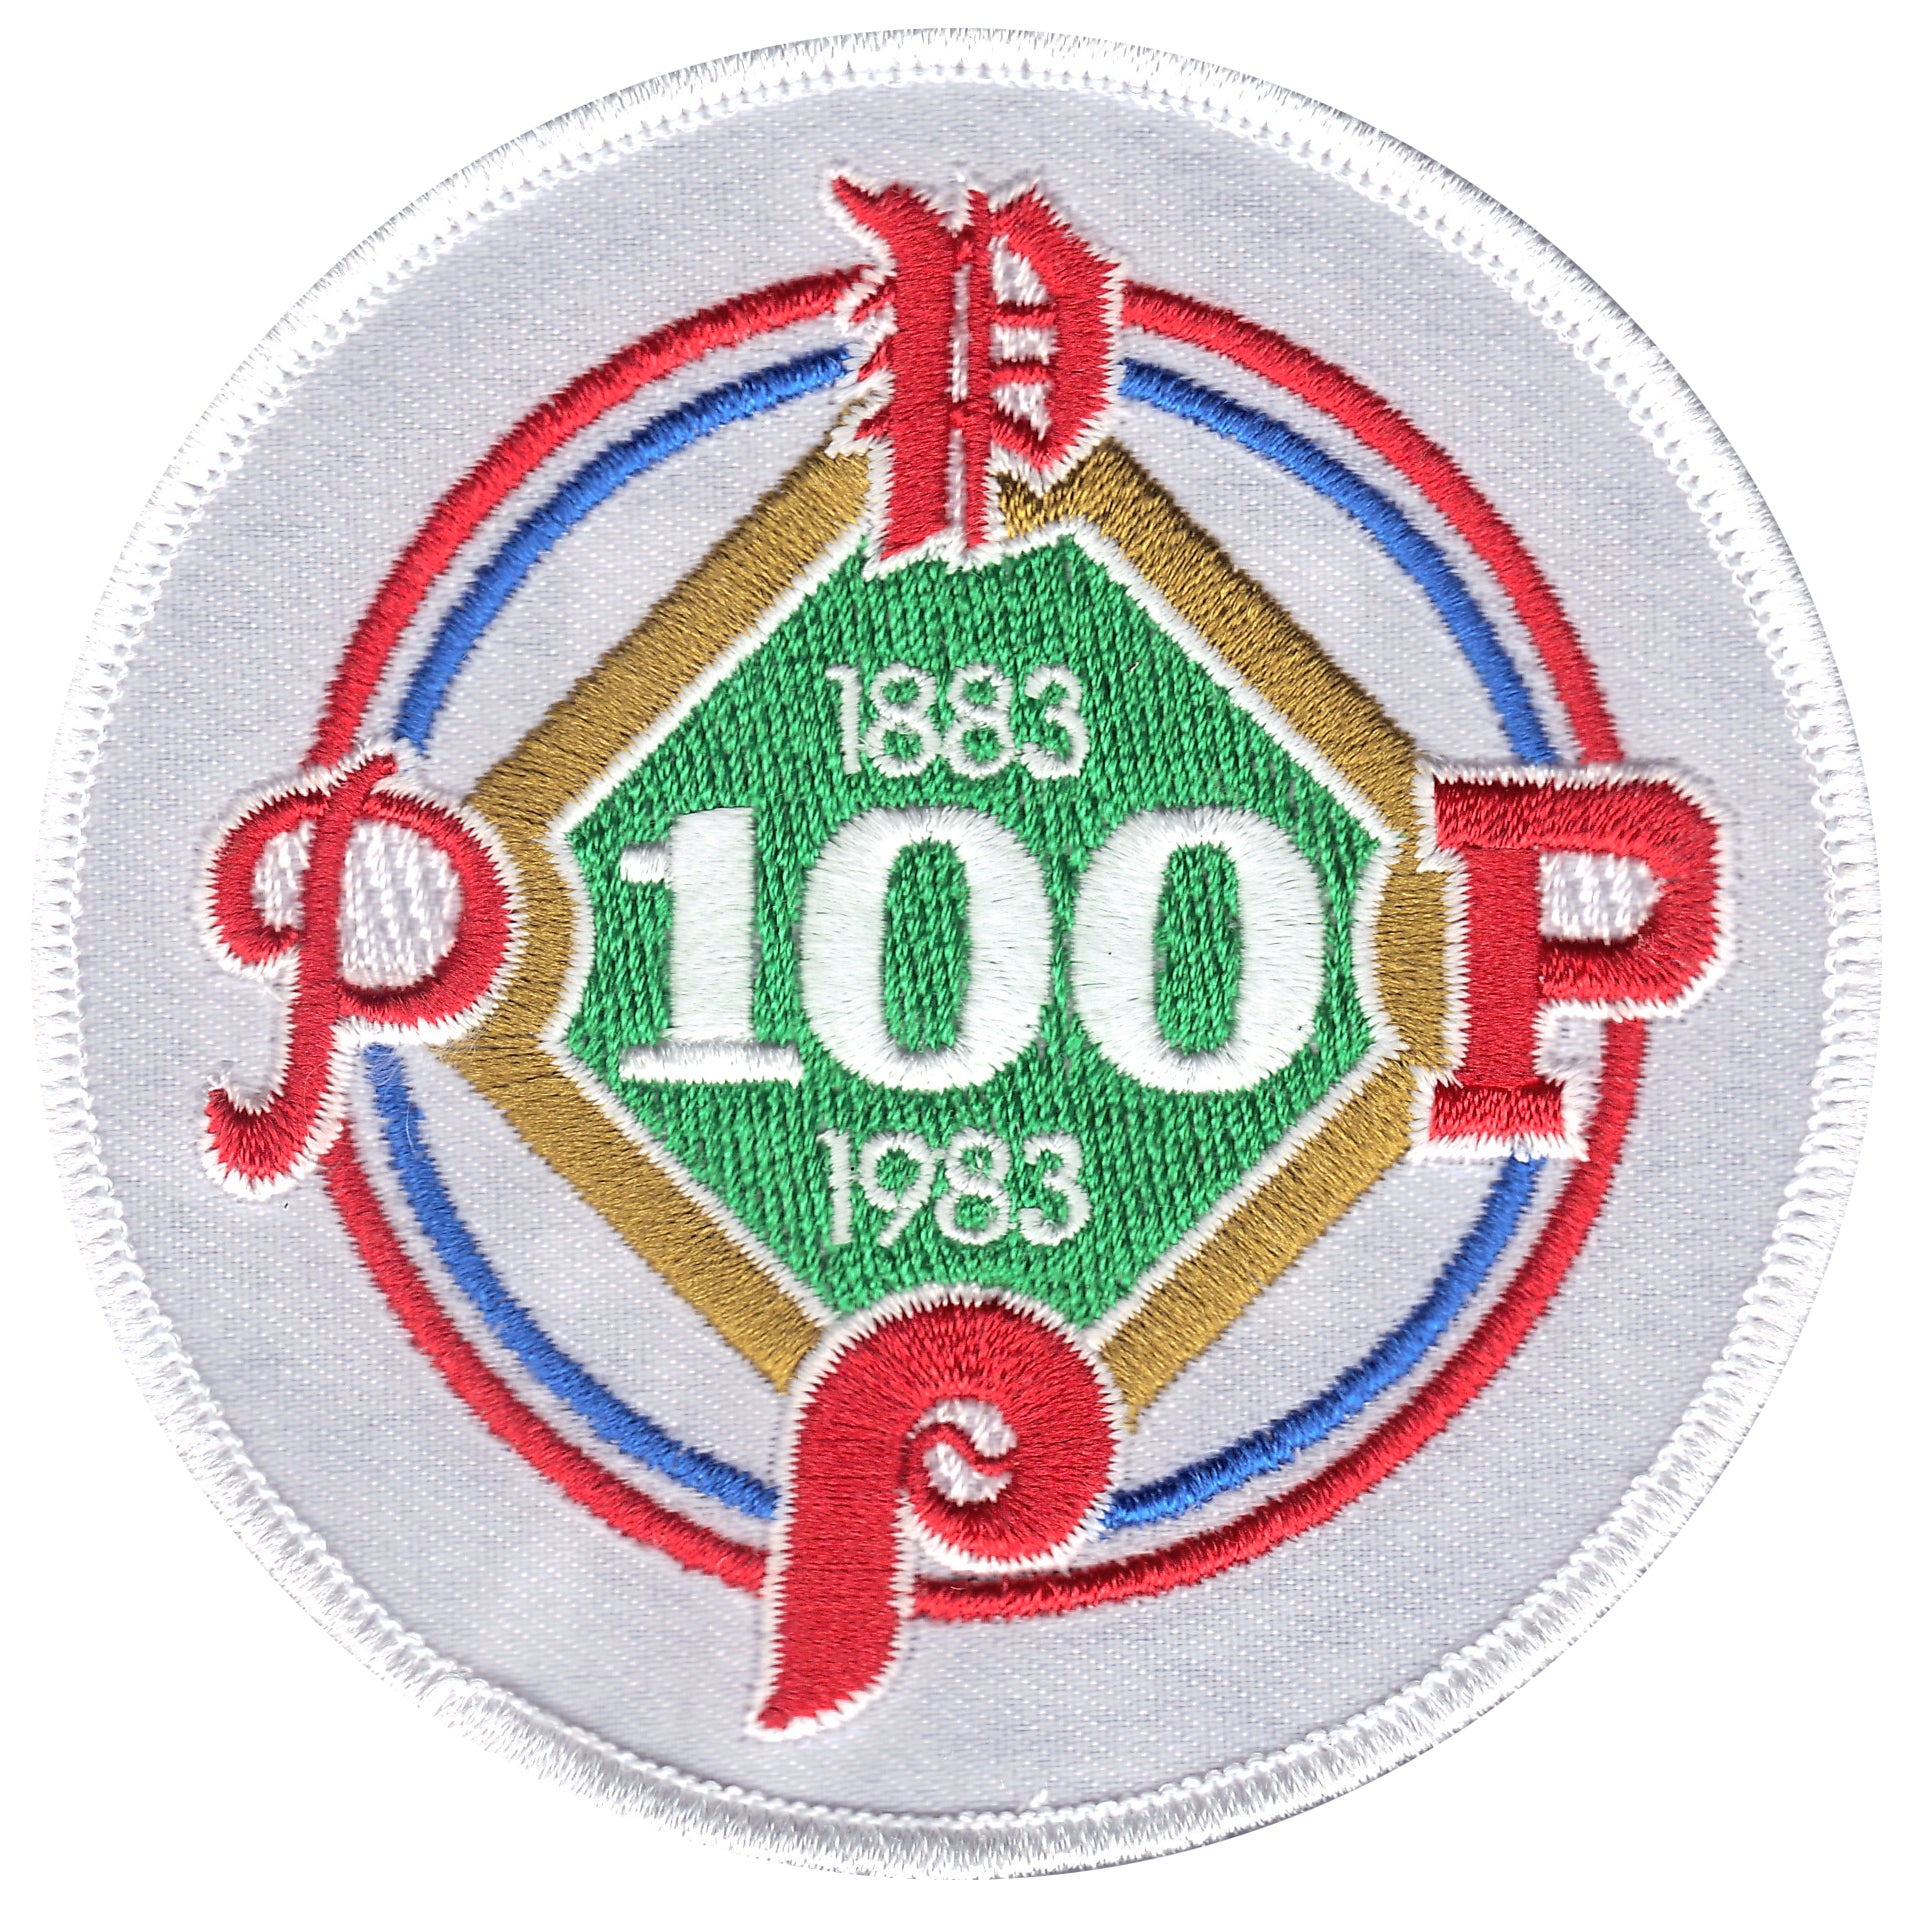 Philadelphia Phillies 1983